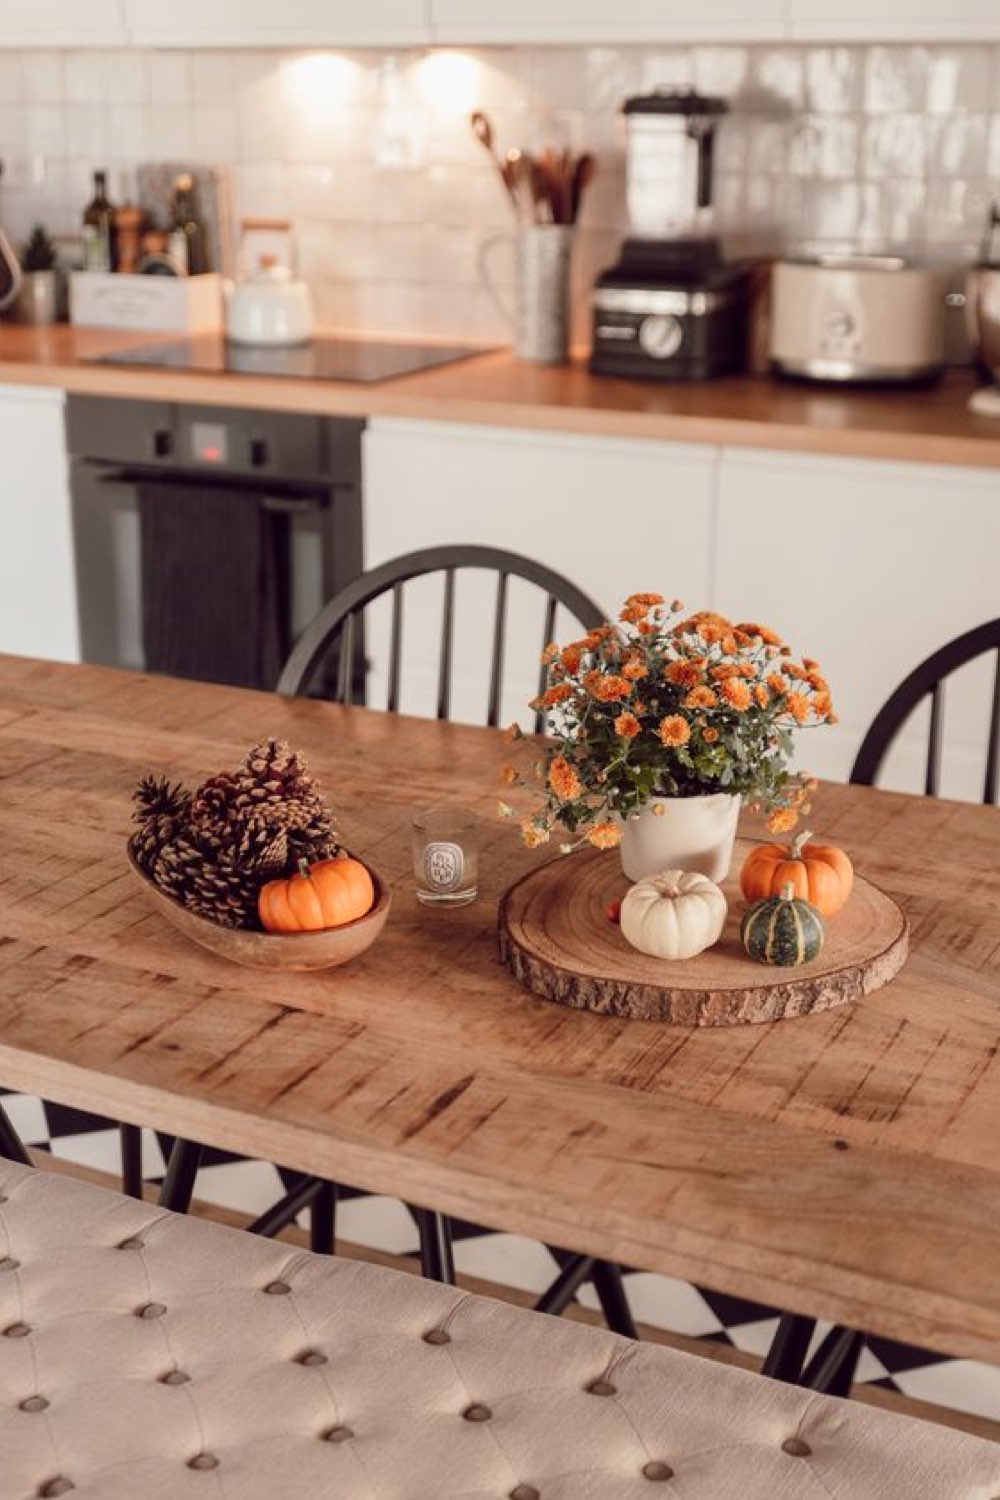 decoration table automne a copier quotidien table de cuisine tous les jour rondin de bois petite citrouille bouquet de fleurs simple et facile à créer